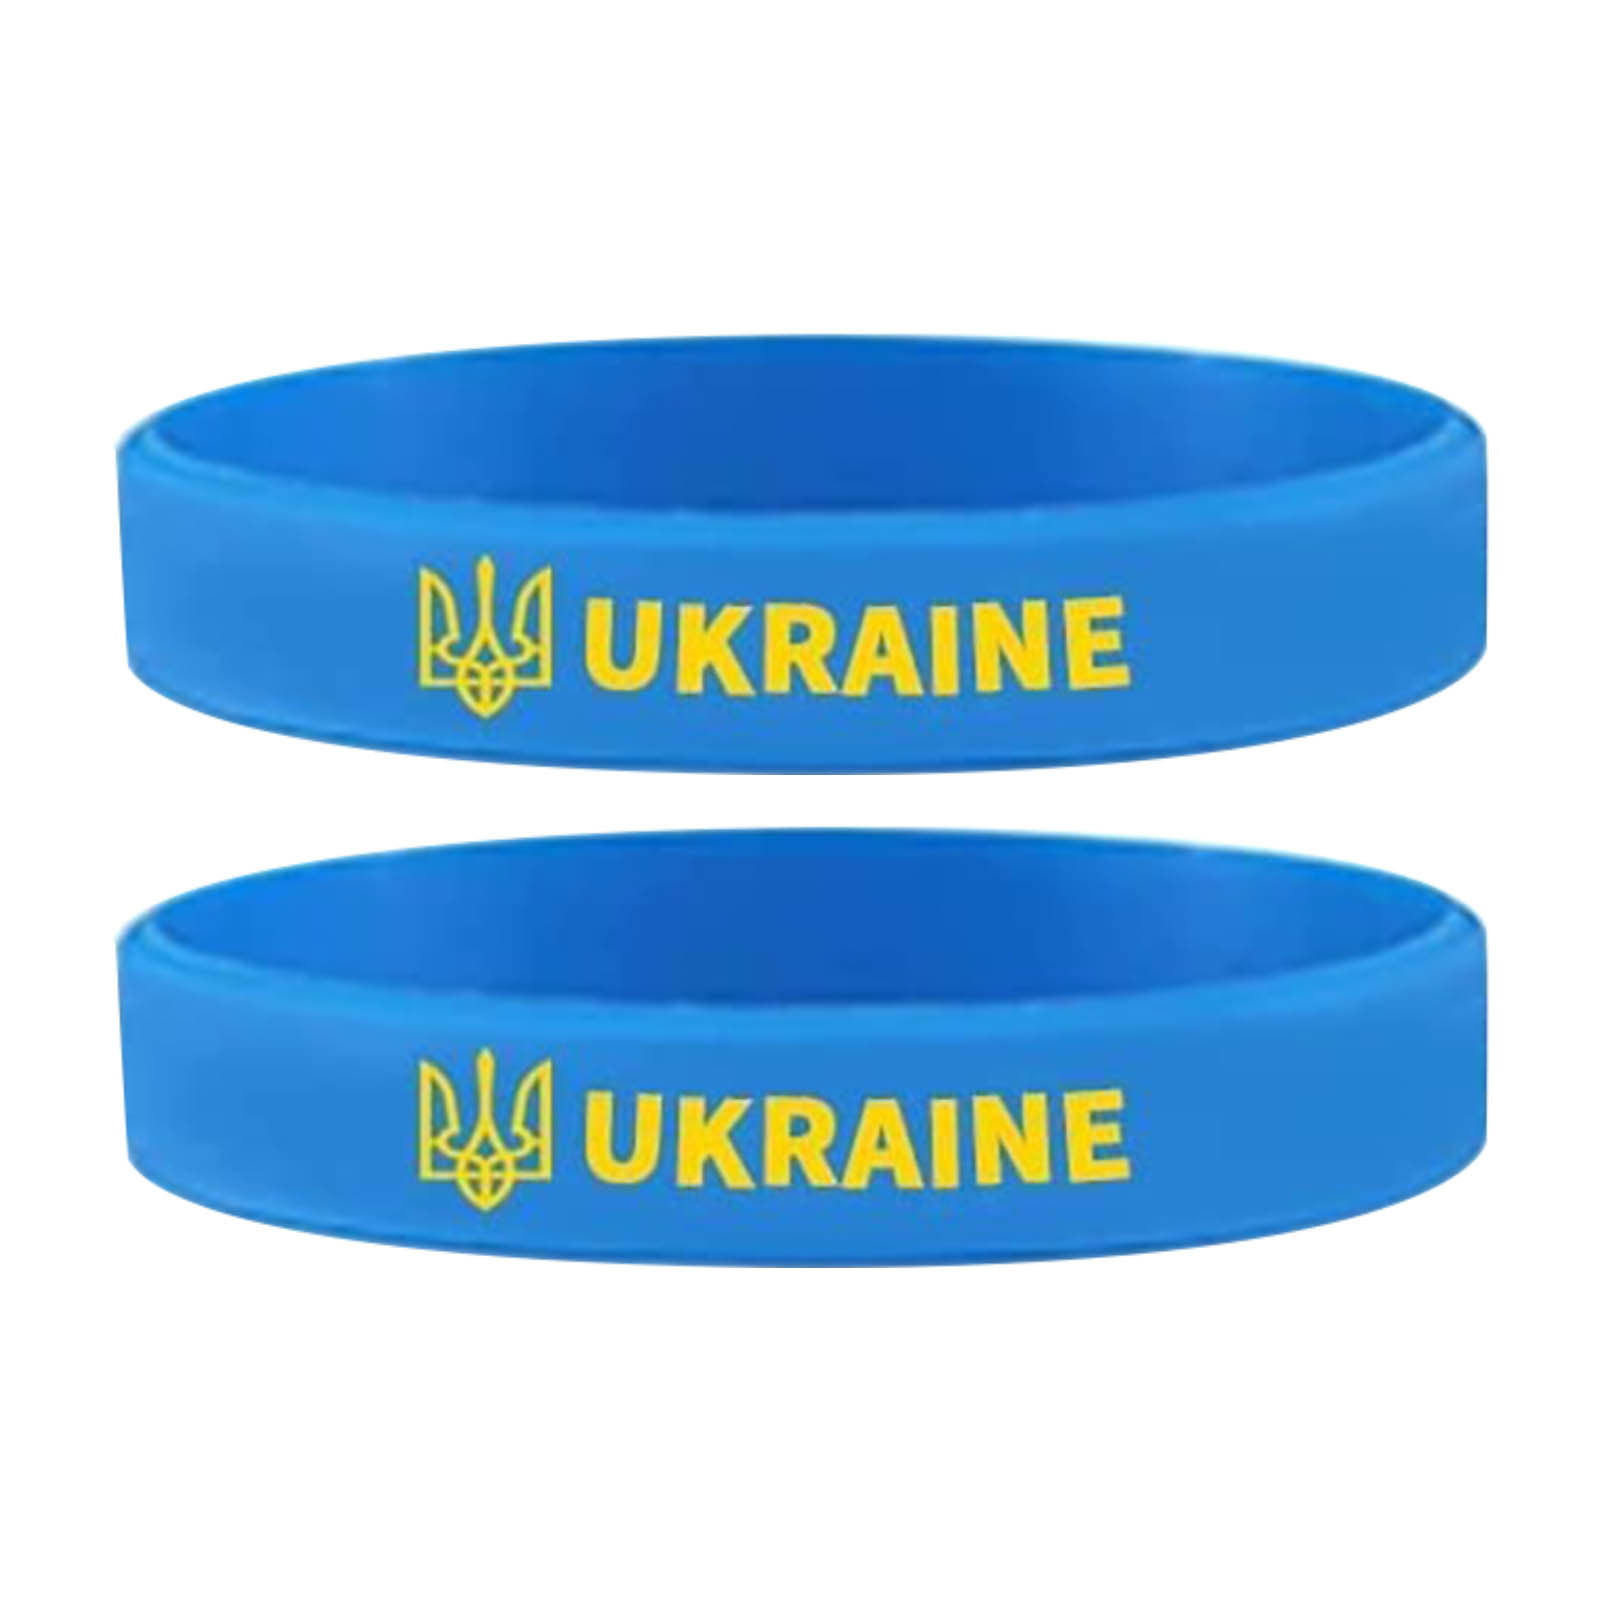 Ukraine National Flag Bracelet Elastic Silicone Wristband NEW